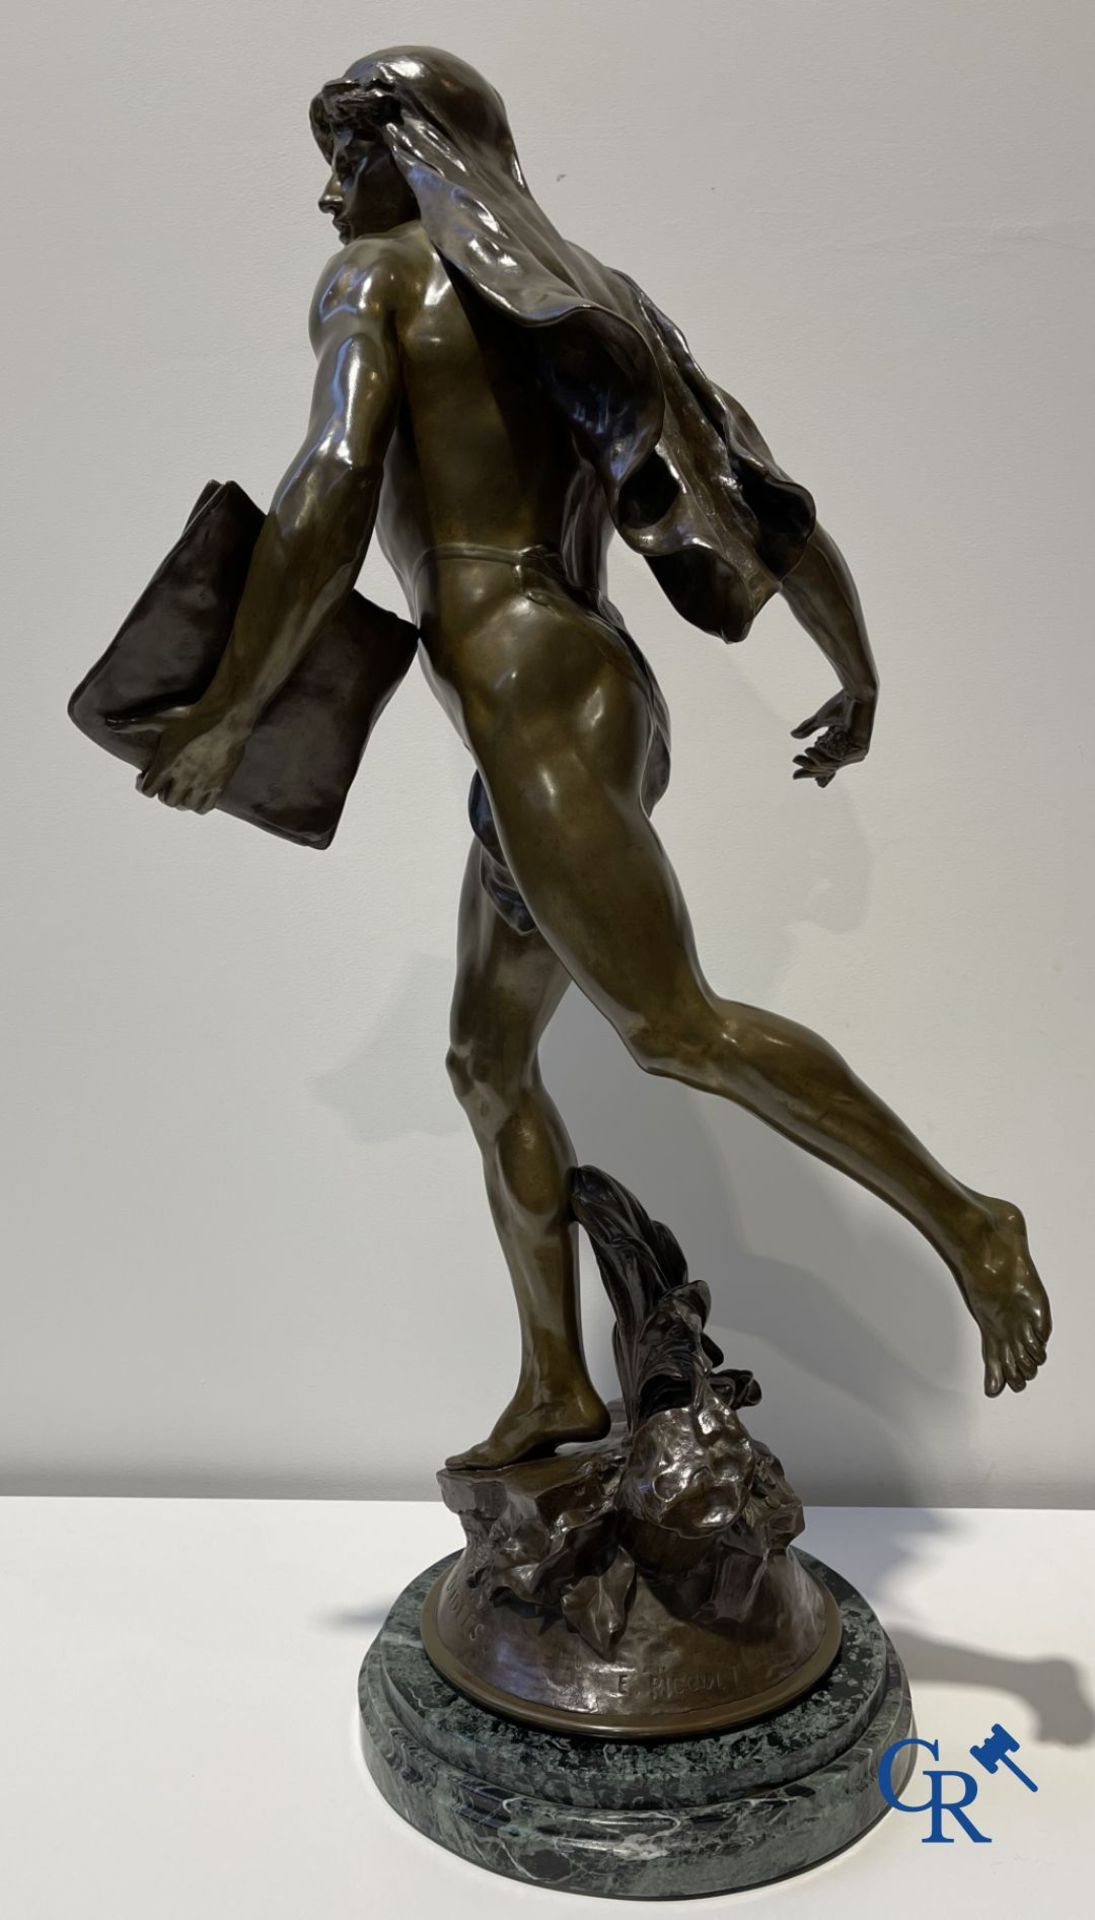 Emile Louis Picault (1833-1915) Large bronze statue "Le Semeur d'idées"
Foundry stamp Collin & Cie P - Image 9 of 16